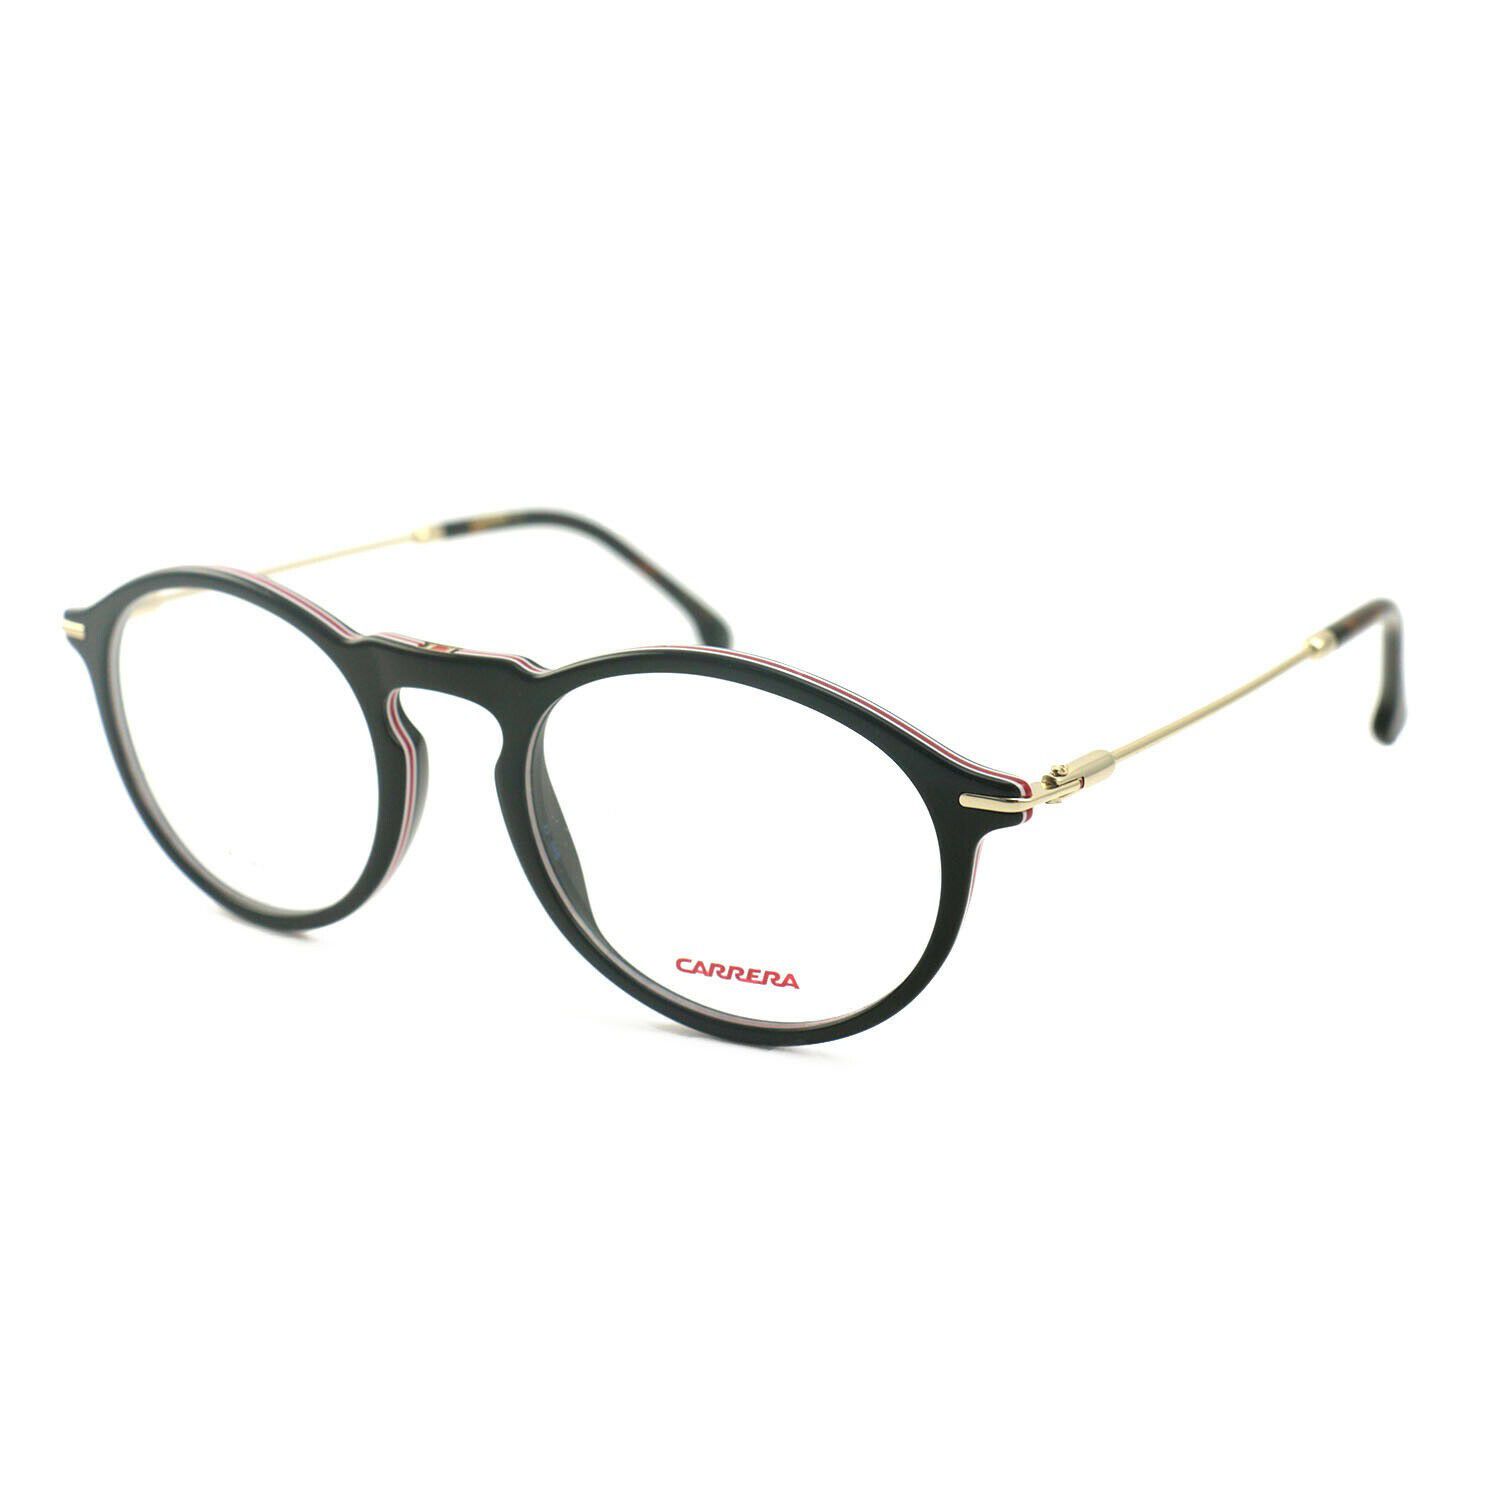 Carrera Women Eyeglasses RR 193 WR7 Black/Havana Full Rim 50 20 145